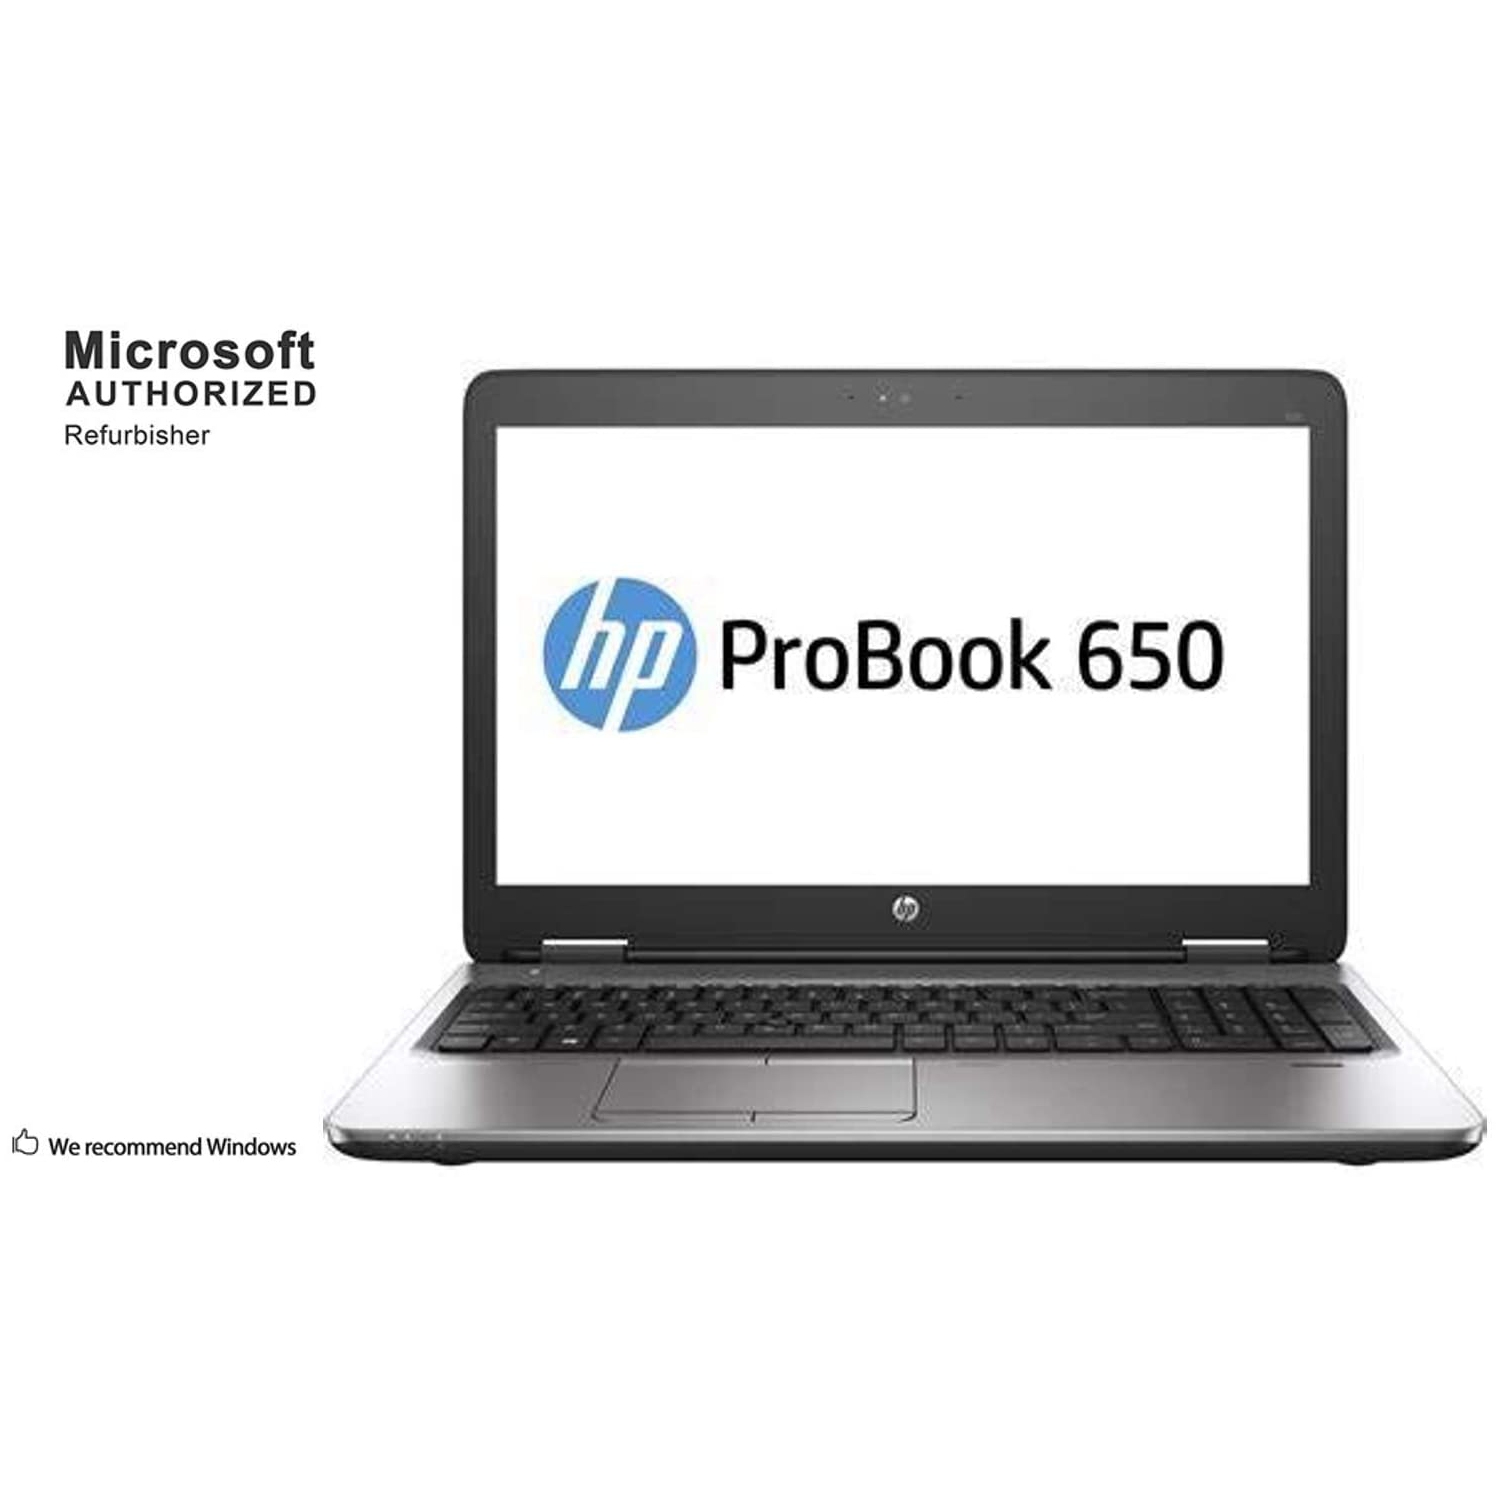 HP ProBook 650 G2 15.6" Laptop - Intel Core i5 6th Gen (i5-6300U) | 8GB RAM DDR3 | 256GB SSD | Windows 10 Pro - Refurbished